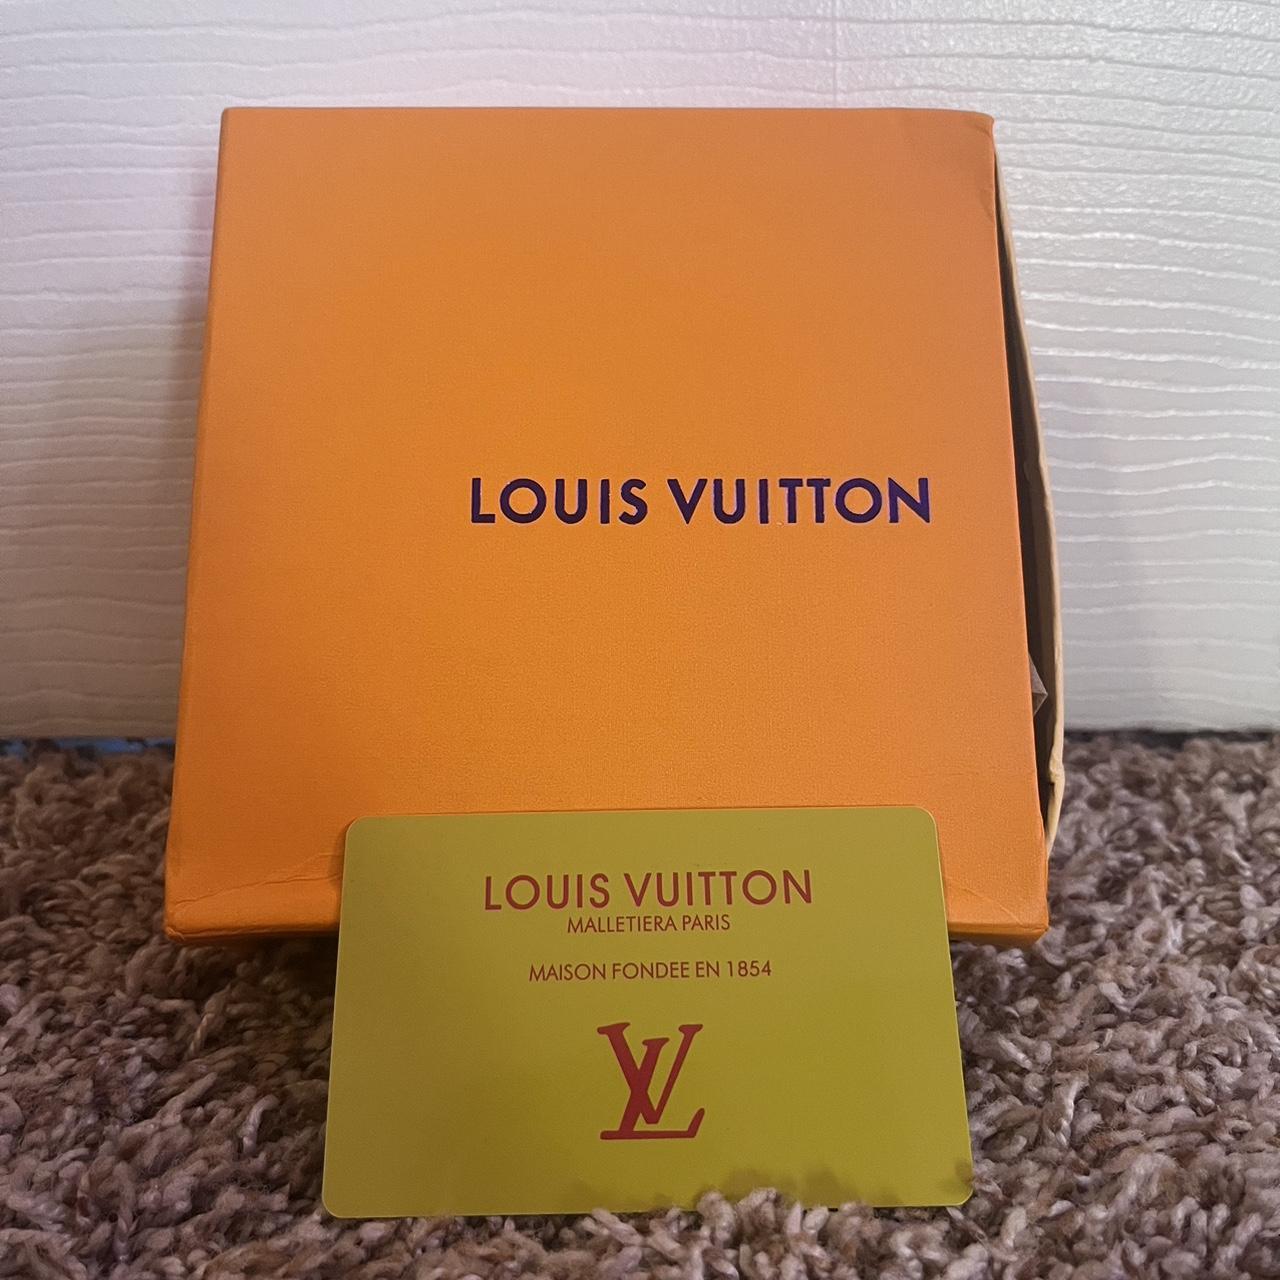 42 waist, white Louis Vuitton Belt, gold buckle,... - Depop